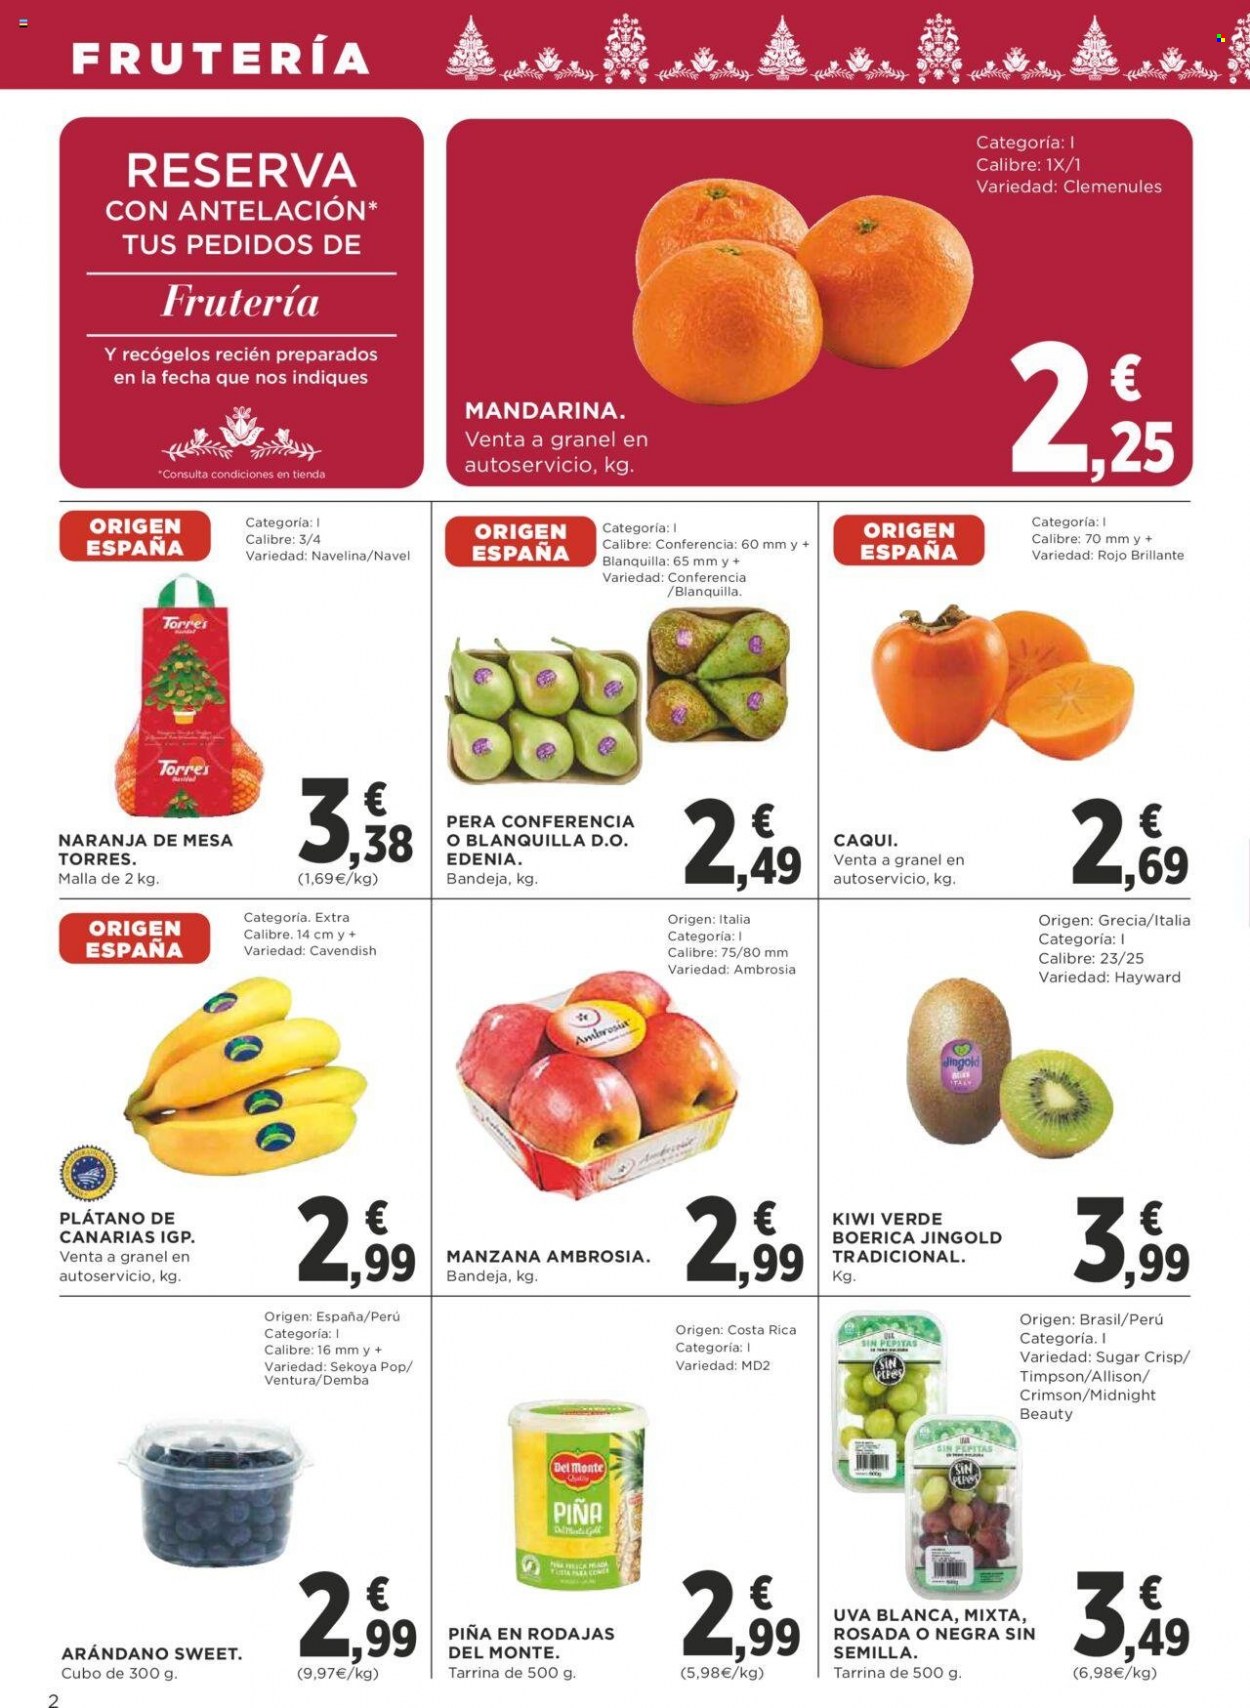 thumbnail - Folleto actual Supercor supermercados - 01/12/22 - 14/12/22 - Ventas - piña, pera, kaki, mandarina, naranja, Del Monte, uva blanca, piña en lata. Página 2.